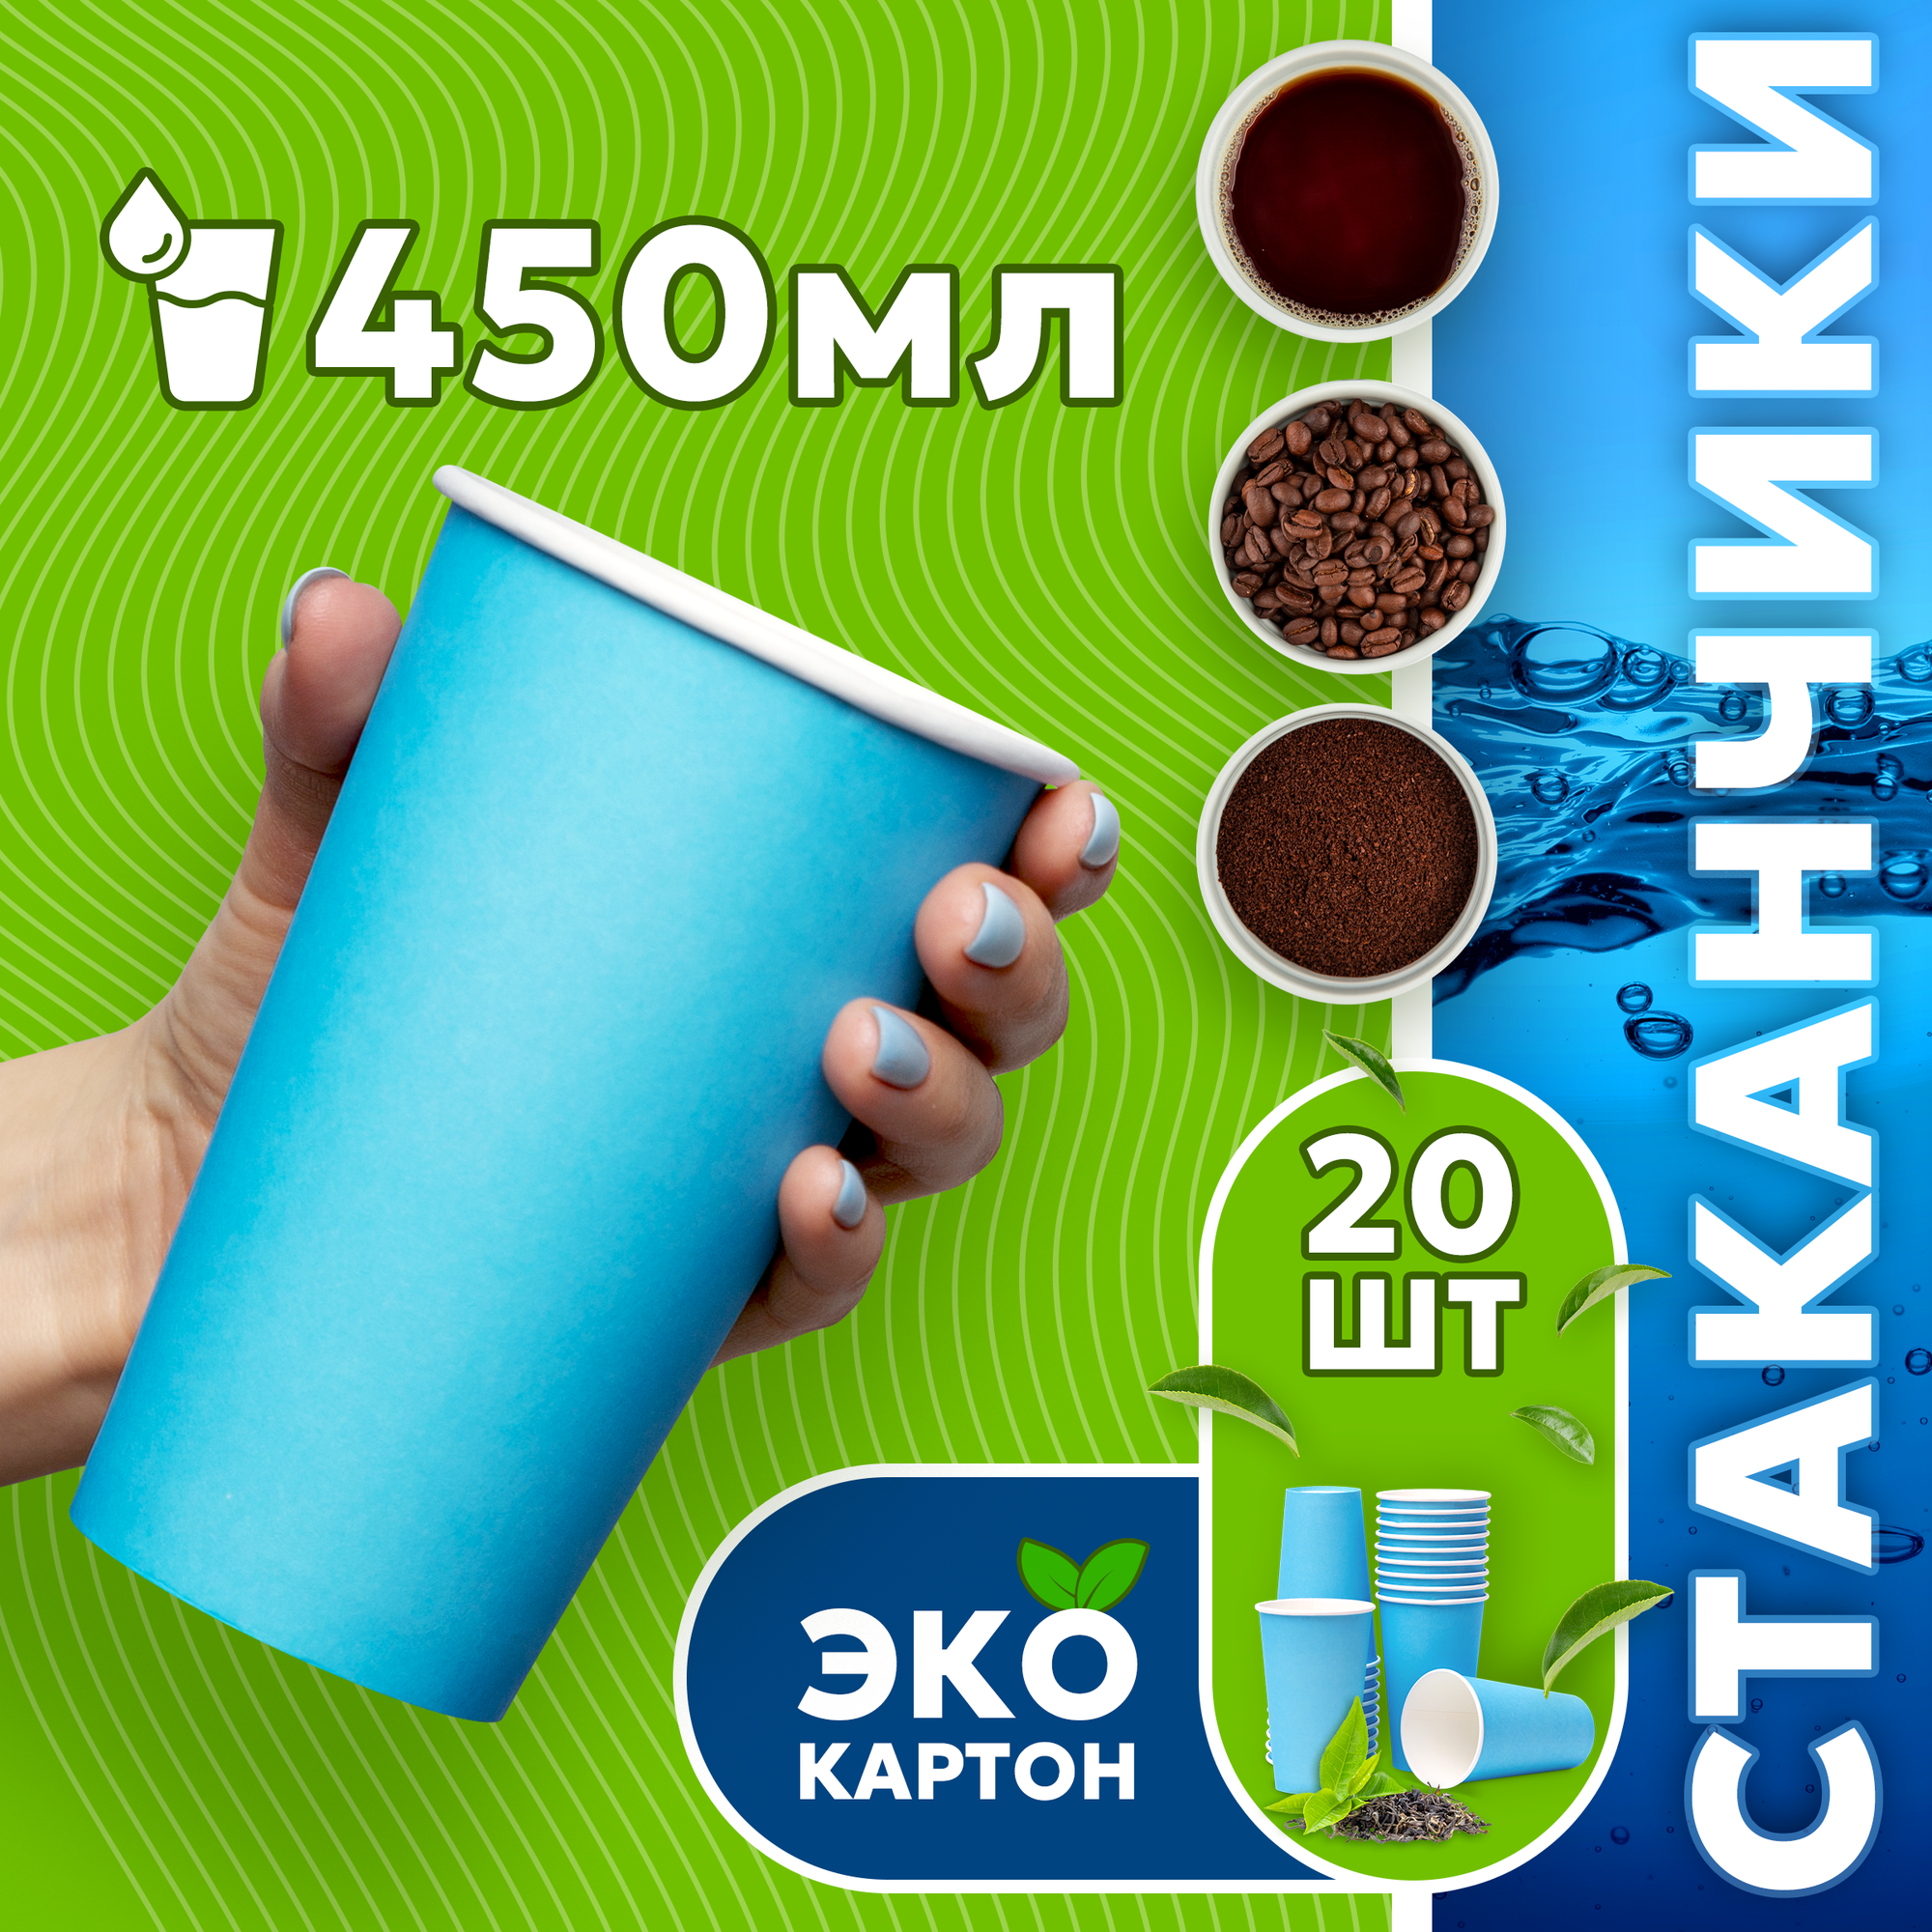 Набор одноразовых стаканов гриникс, объем 450 мл 20 шт. синие, бумажные, однослойные, для кофе, чая, холодных и горячих напитков